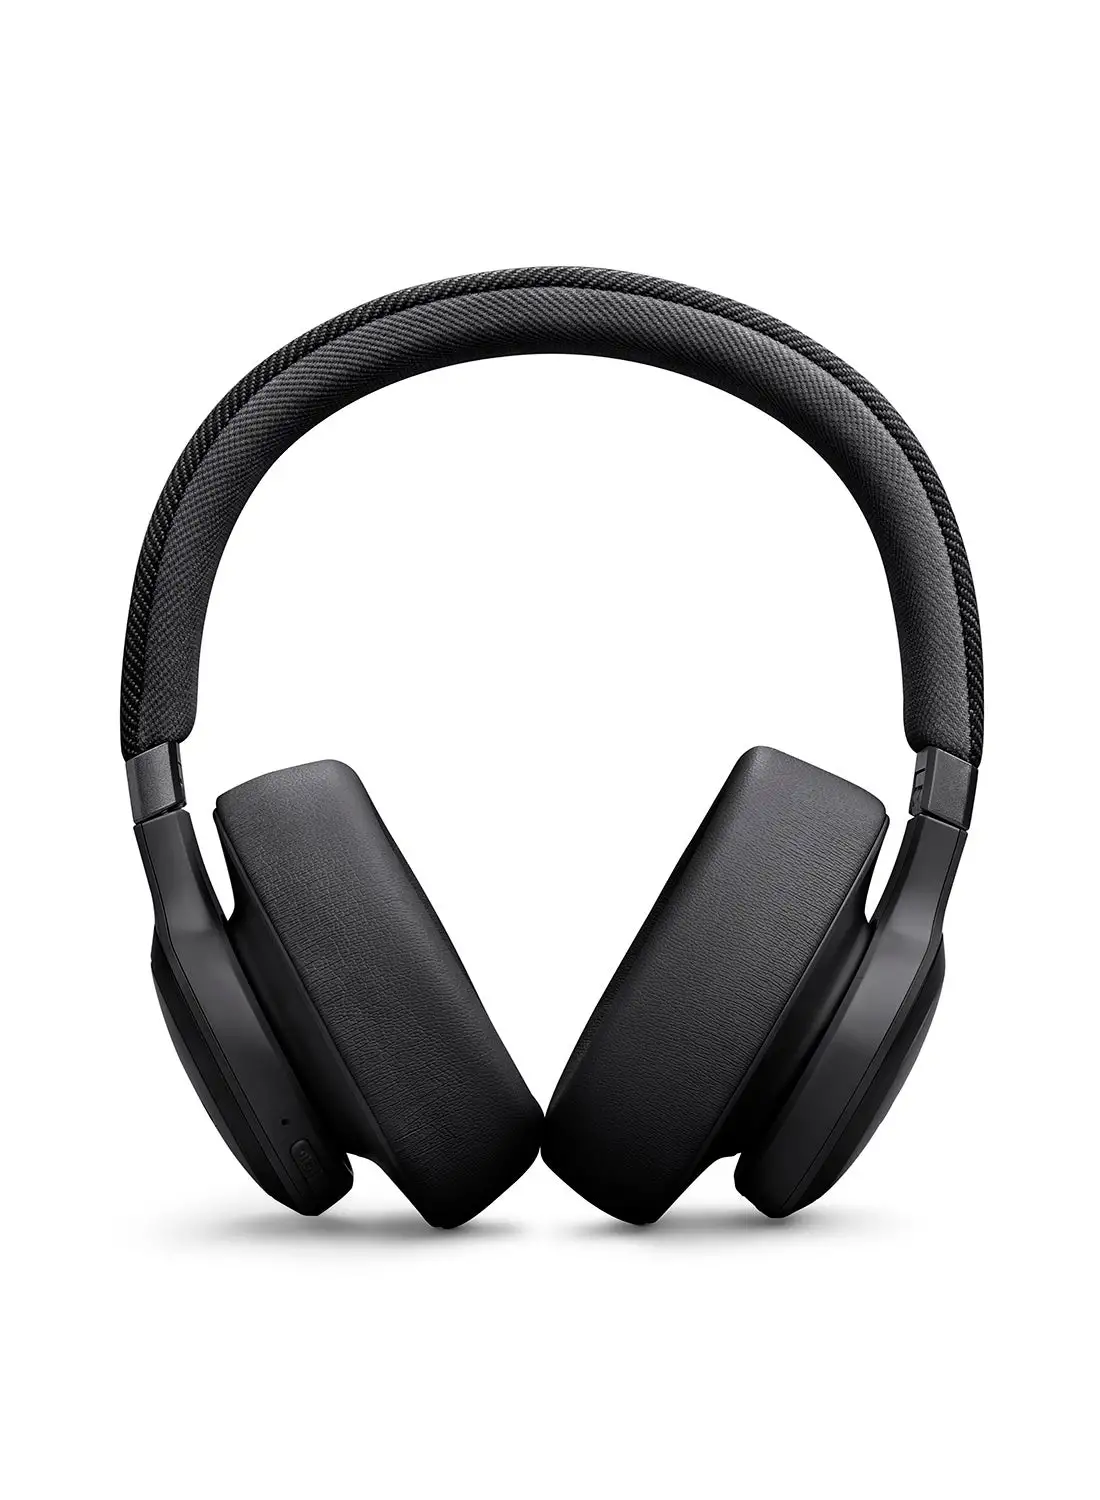 سماعات الرأس JBL Live 770 NC اللاسلكية فوق الأذن مع ميزة إلغاء الضوضاء التكيفية الحقيقية، باللون الأسود